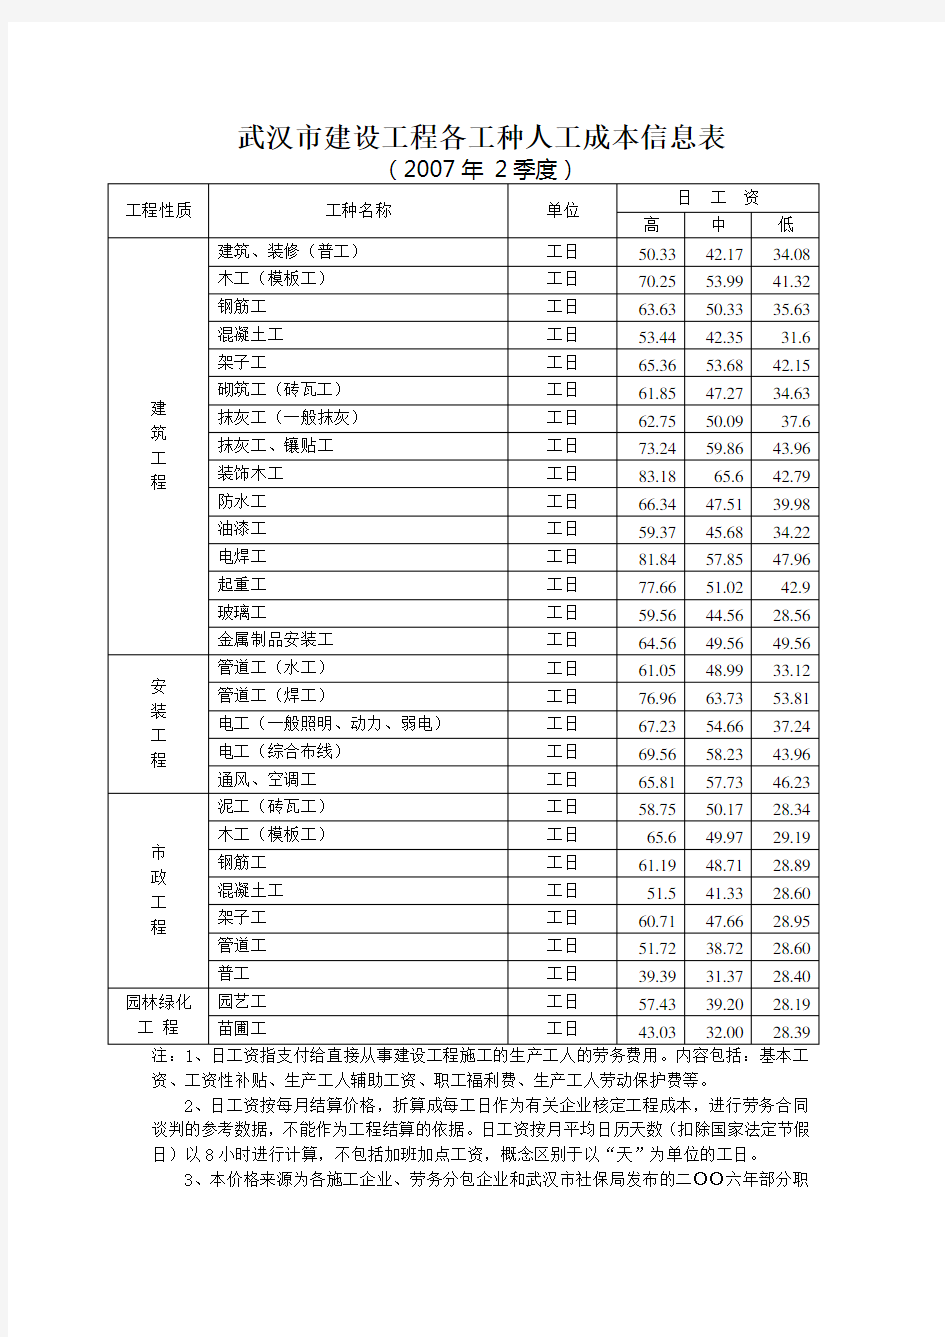 武汉市建设工程各工种人工成本信息表